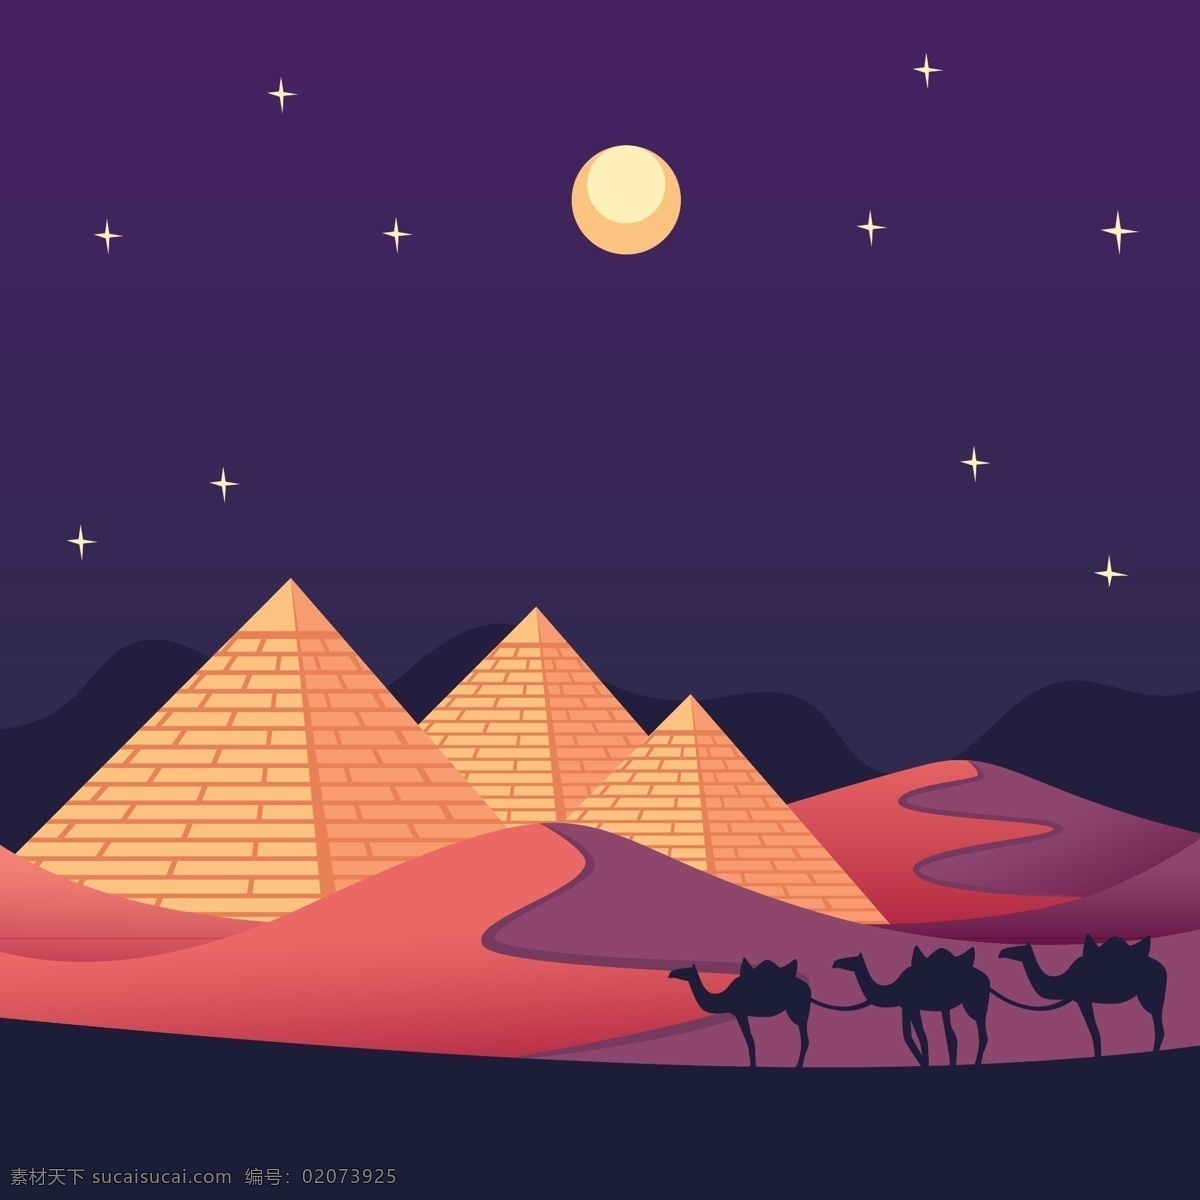 沙漠夜景插画 沙漠 骆驼 金字塔 月亮 沙漠夜晚 平面设计 矢量图